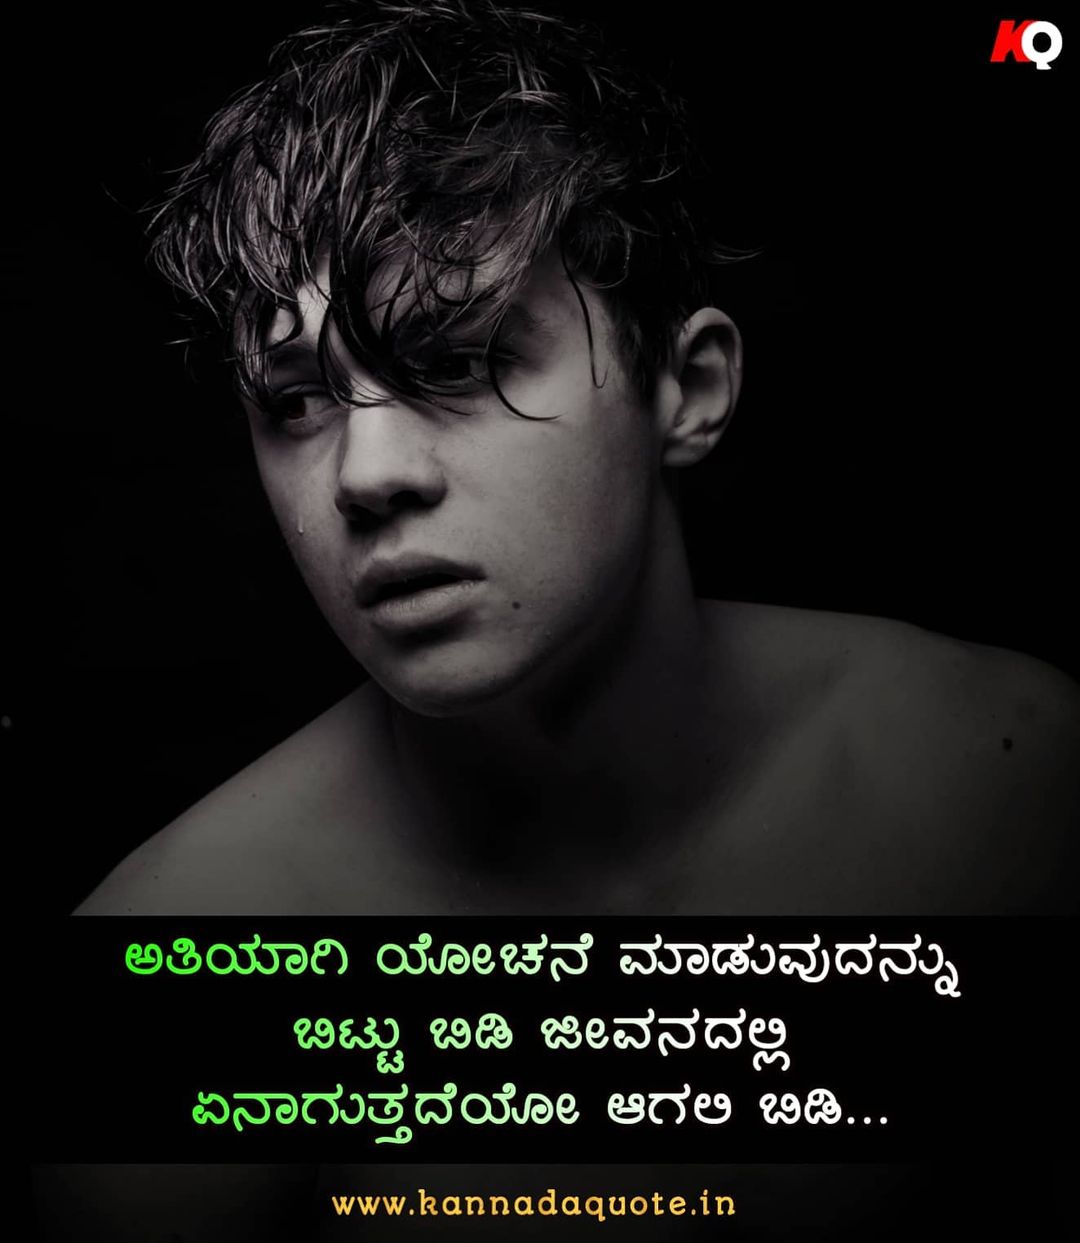 Positive inspirational Kannada quotes